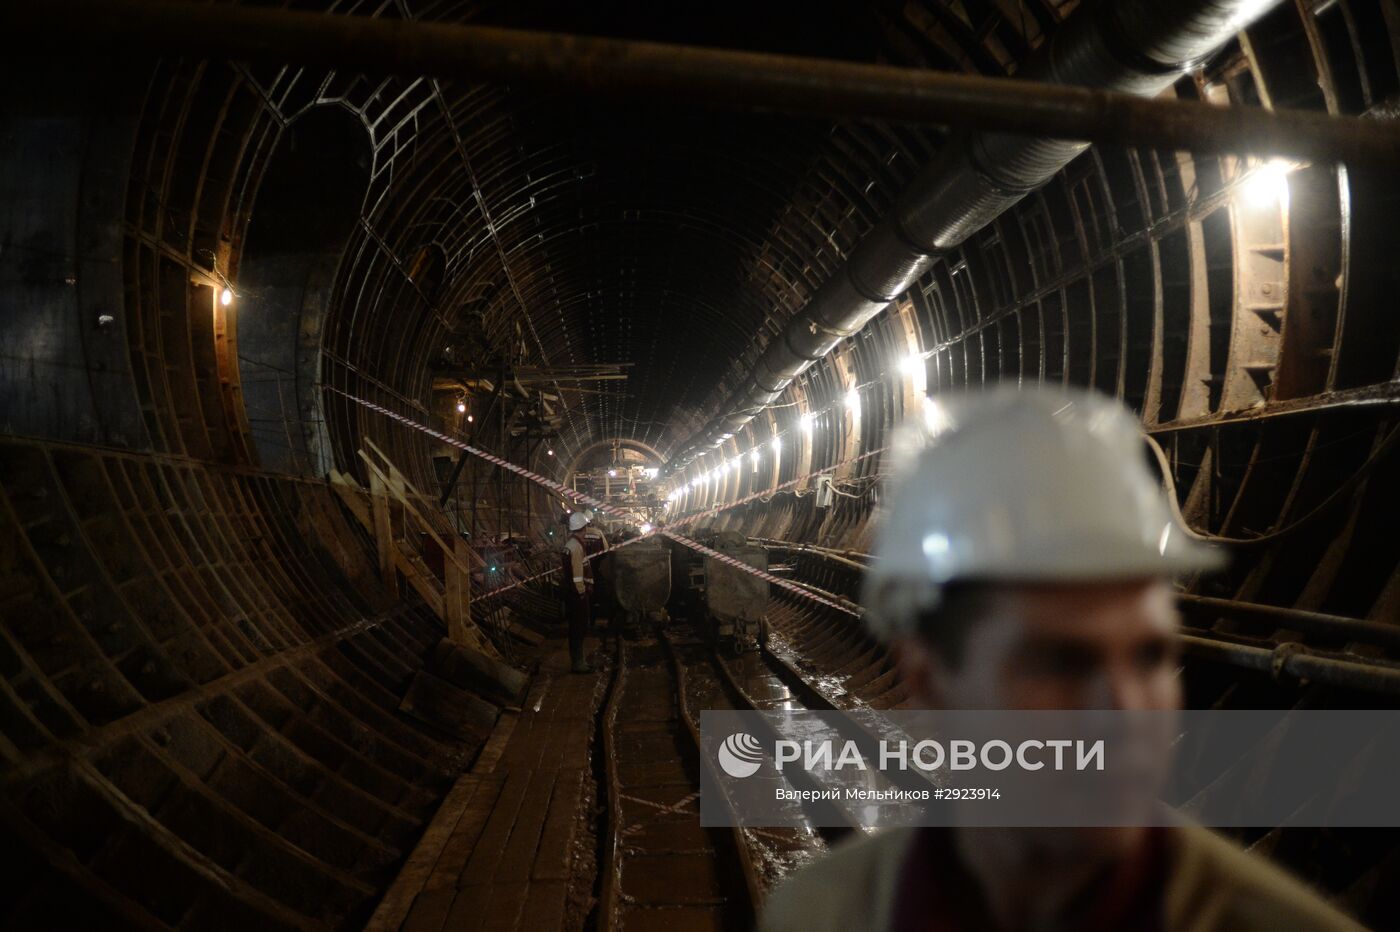 Строительство станции метро "Окружная" в Москве